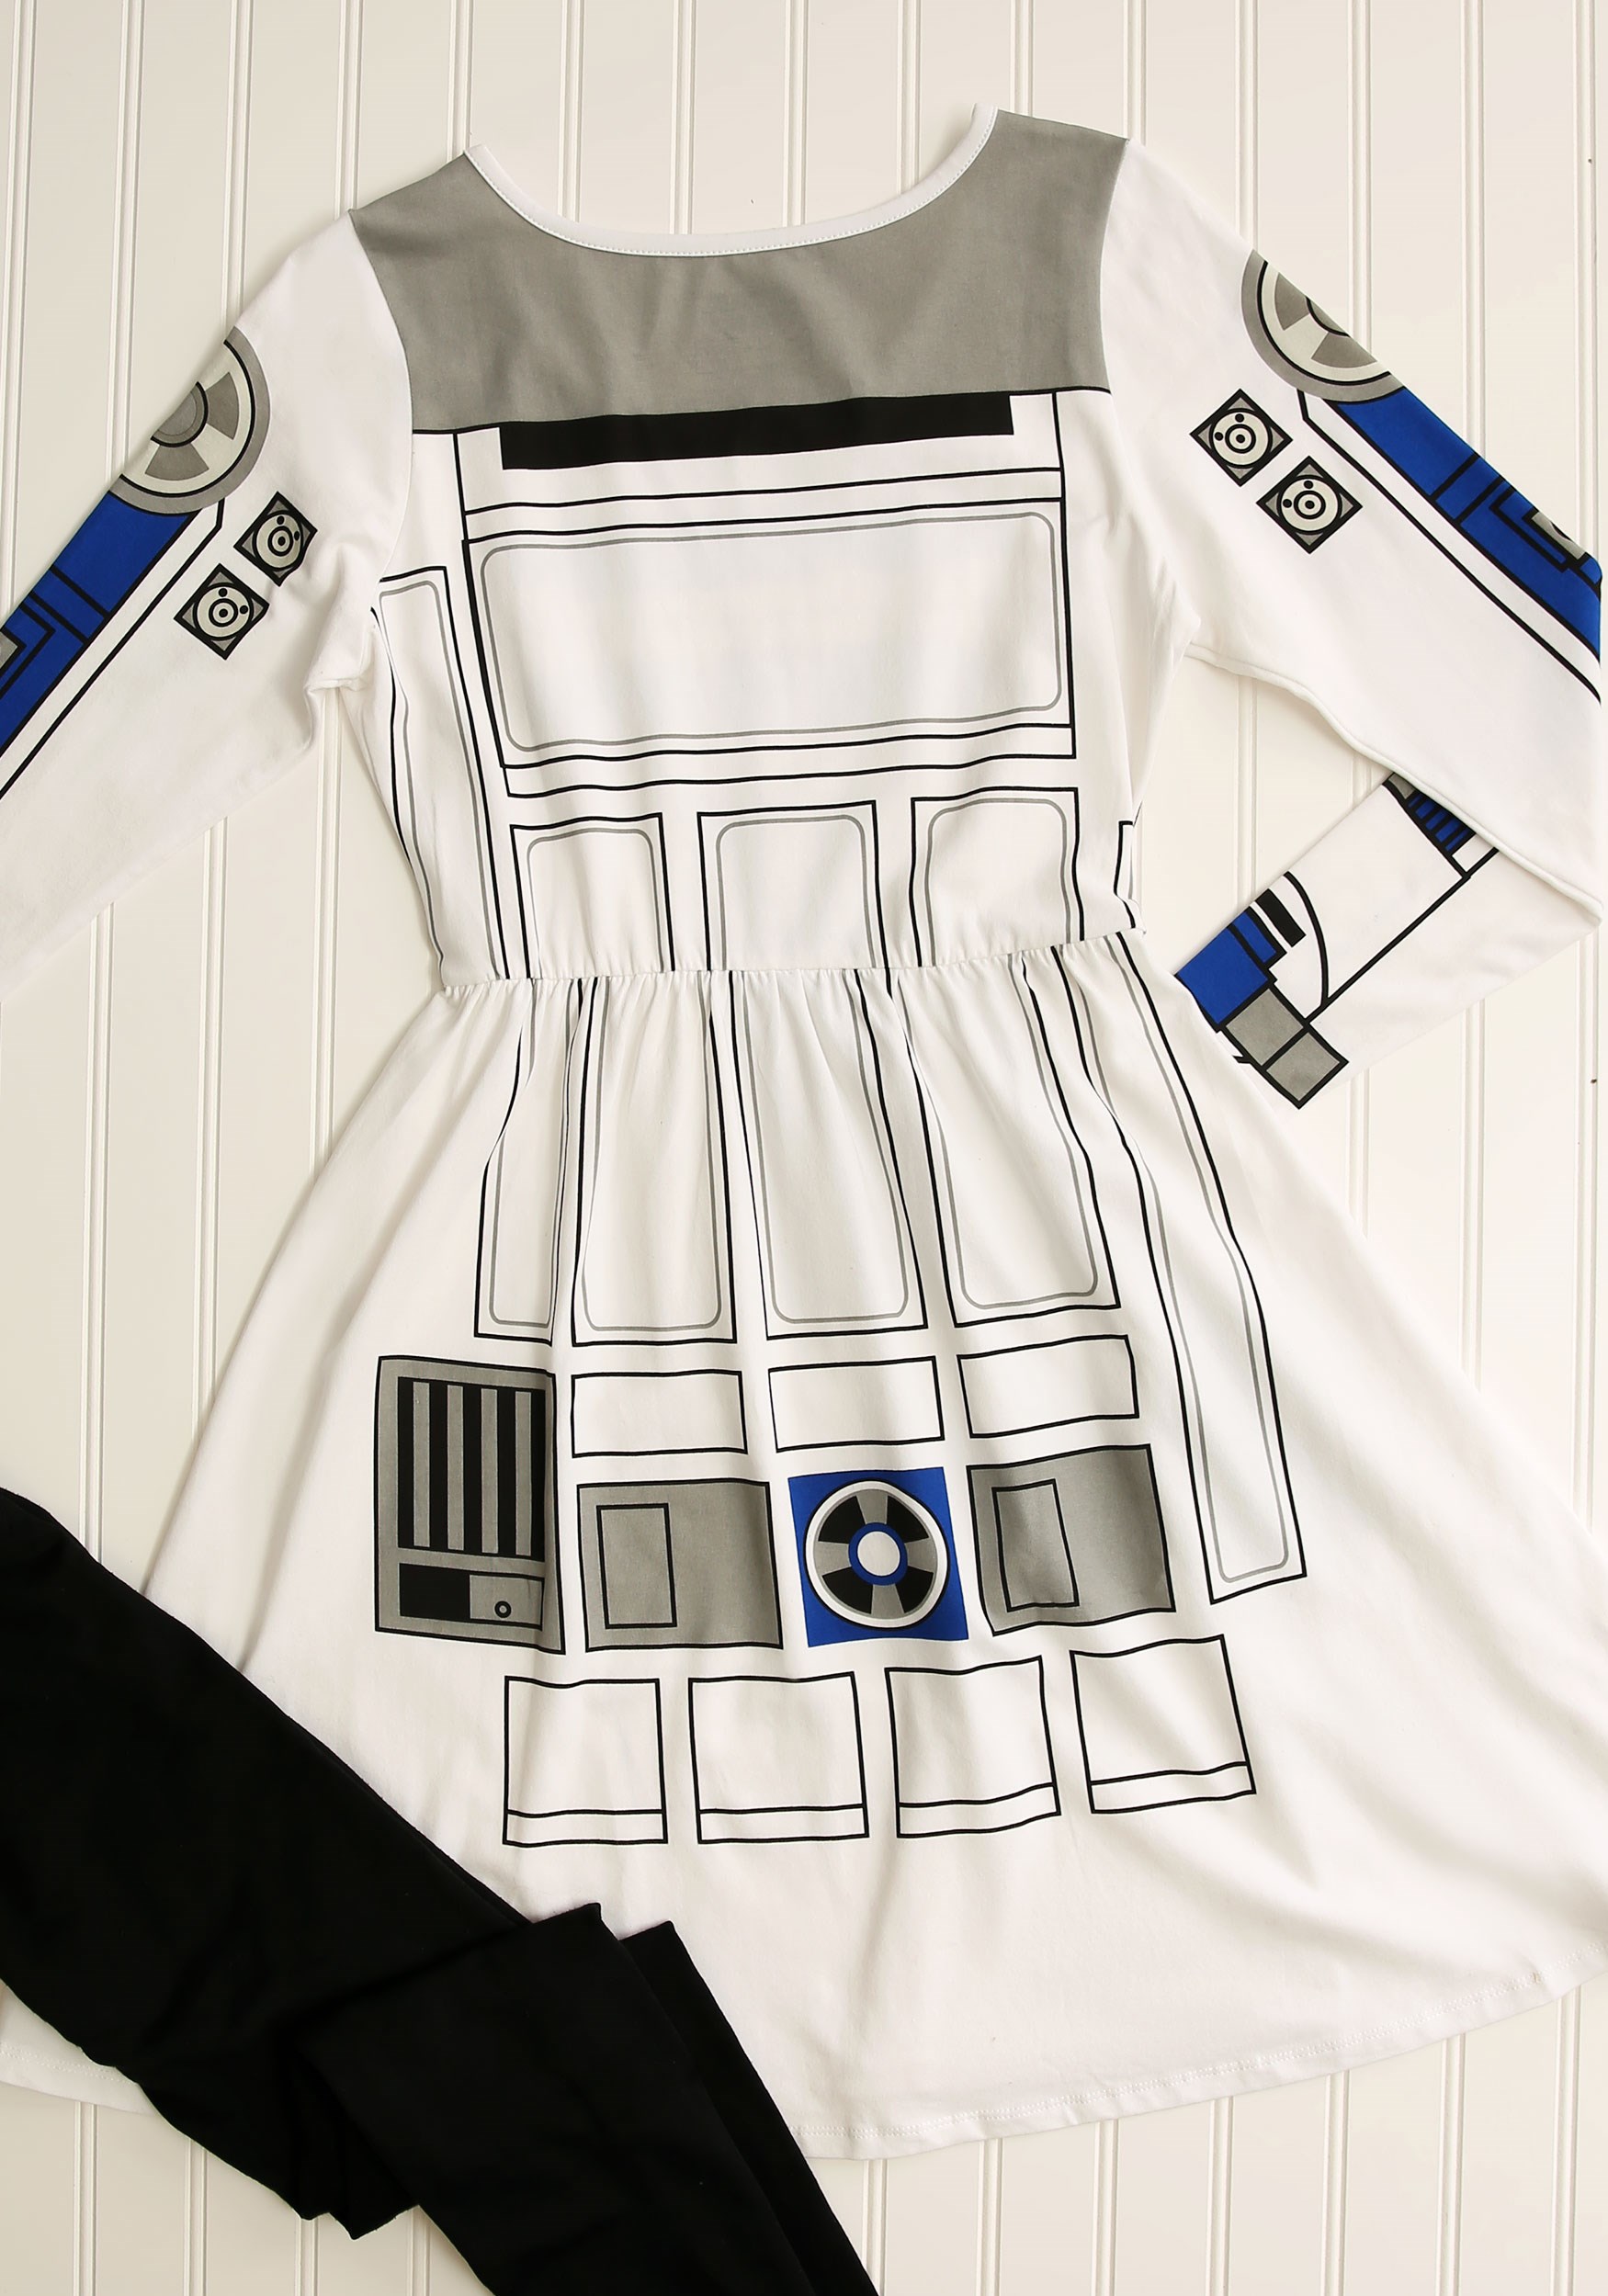 Star Wars I Am R2D2 Skater Dress For Women's Costume